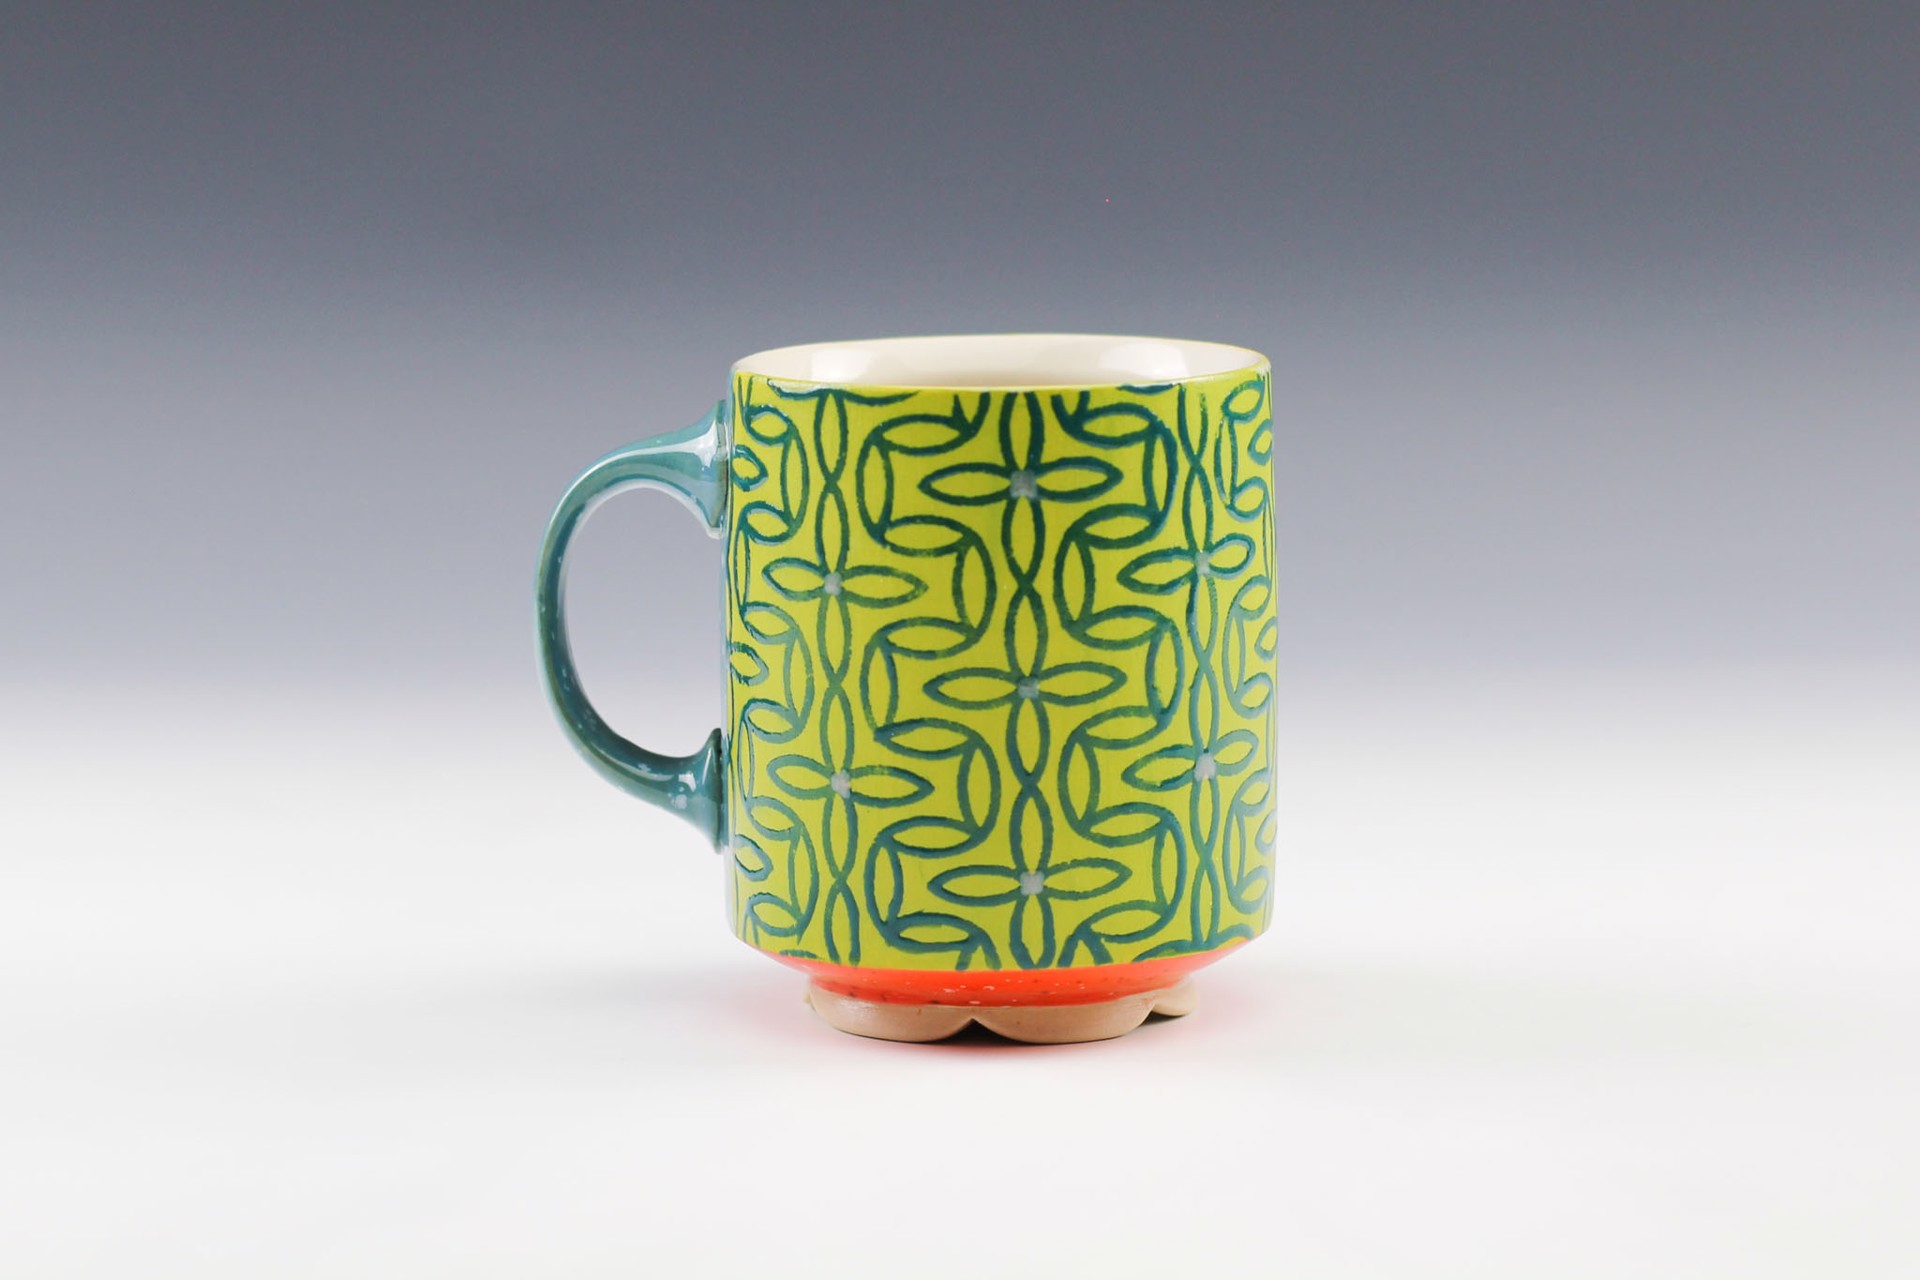 Mug by Rachelle Miller